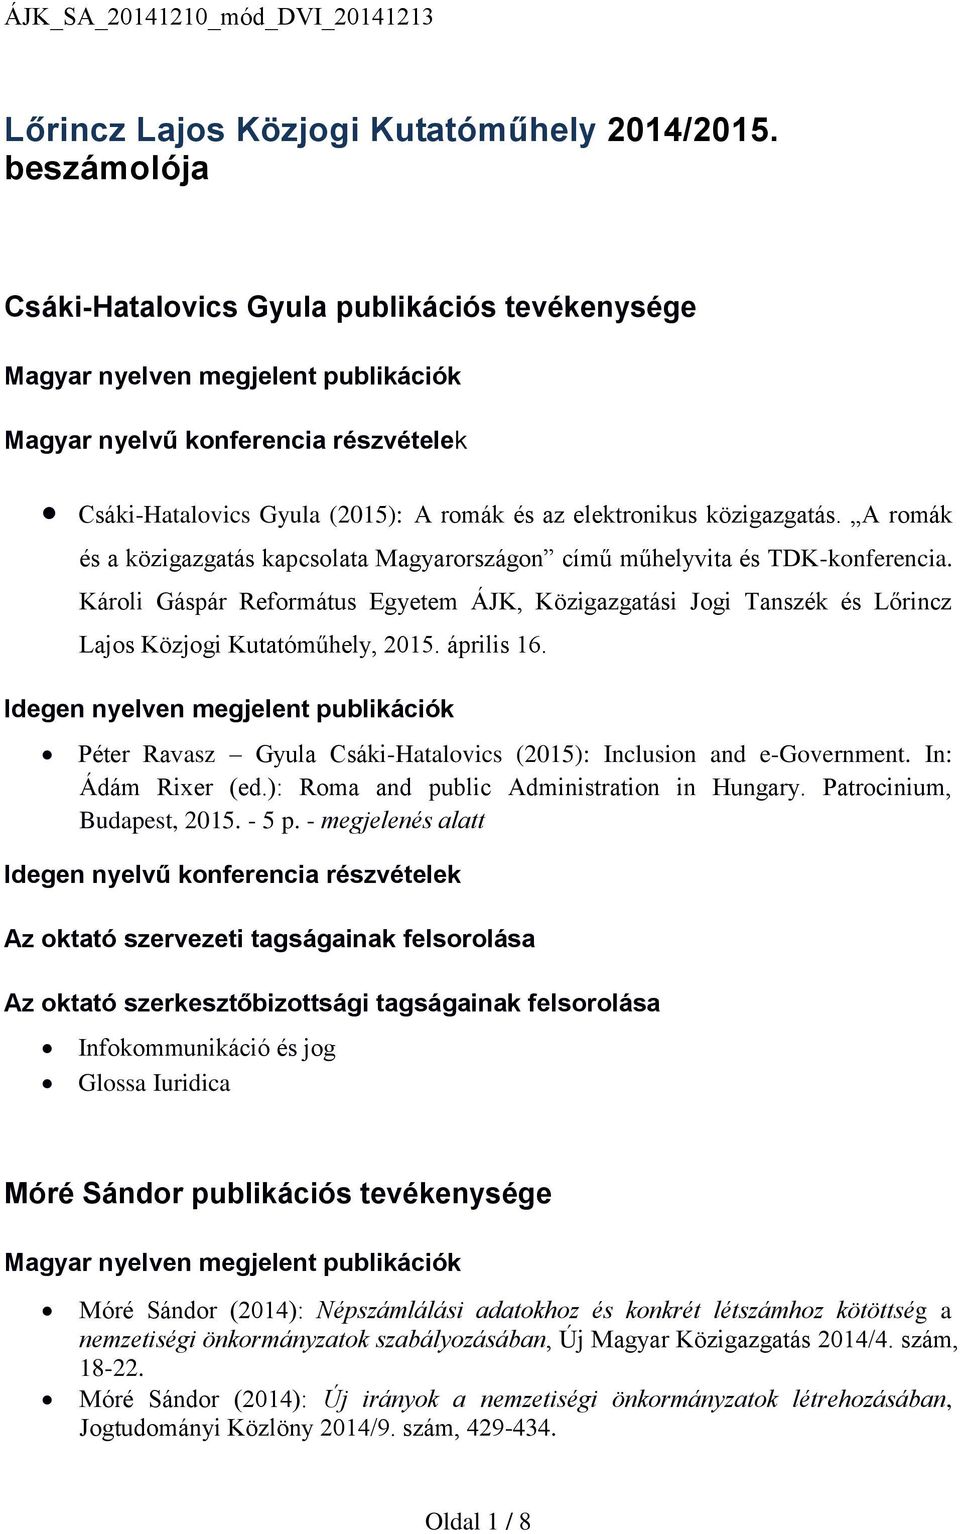 közigazgatás. A romák és a közigazgatás kapcsolata Magyarországon című műhelyvita és TDK-konferencia.